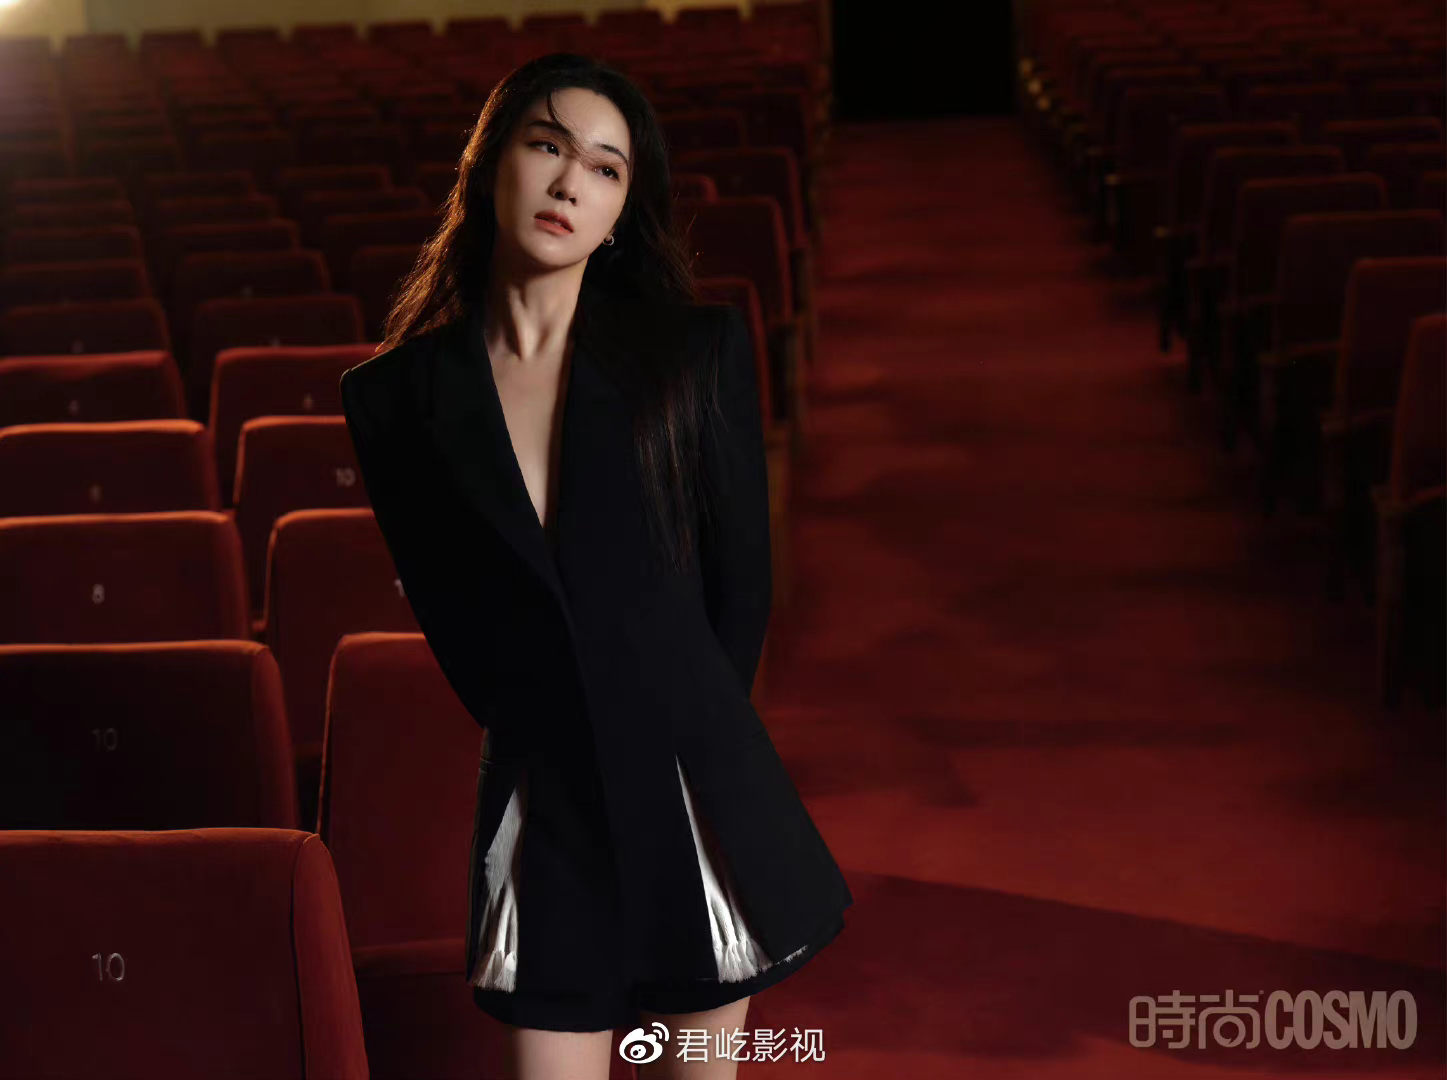 张可盈出席中国电视剧年度盛典 “何幸运”高级优雅气质绝佳超亮眼 - 哔哩哔哩